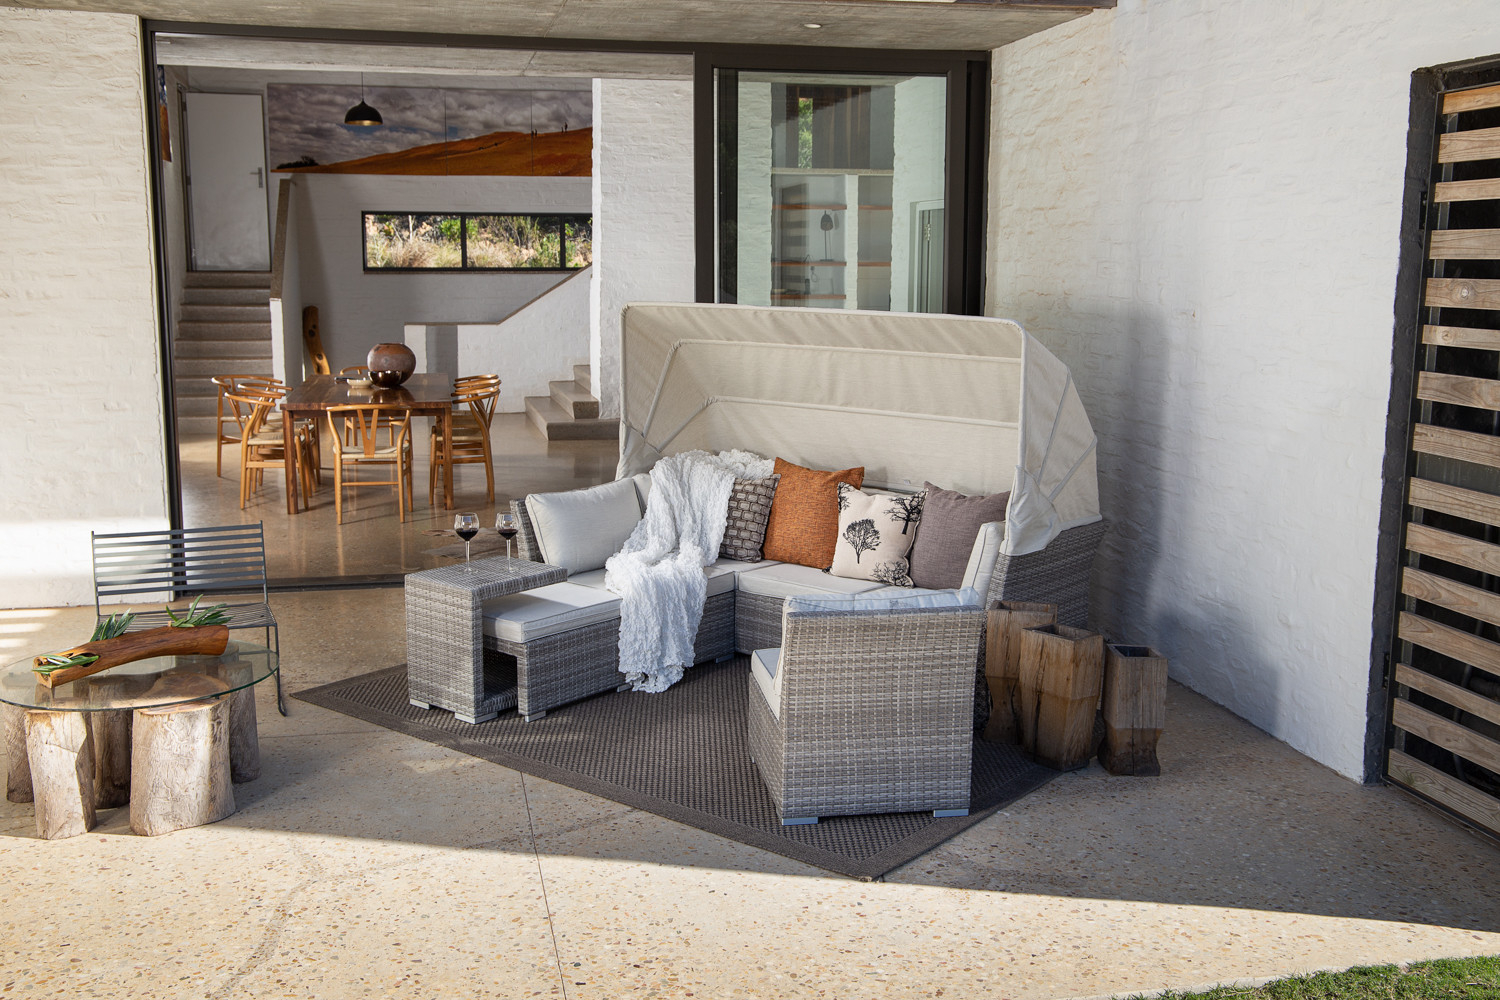 Santorini Patio Lounge Set | Patio Sets for Sale -